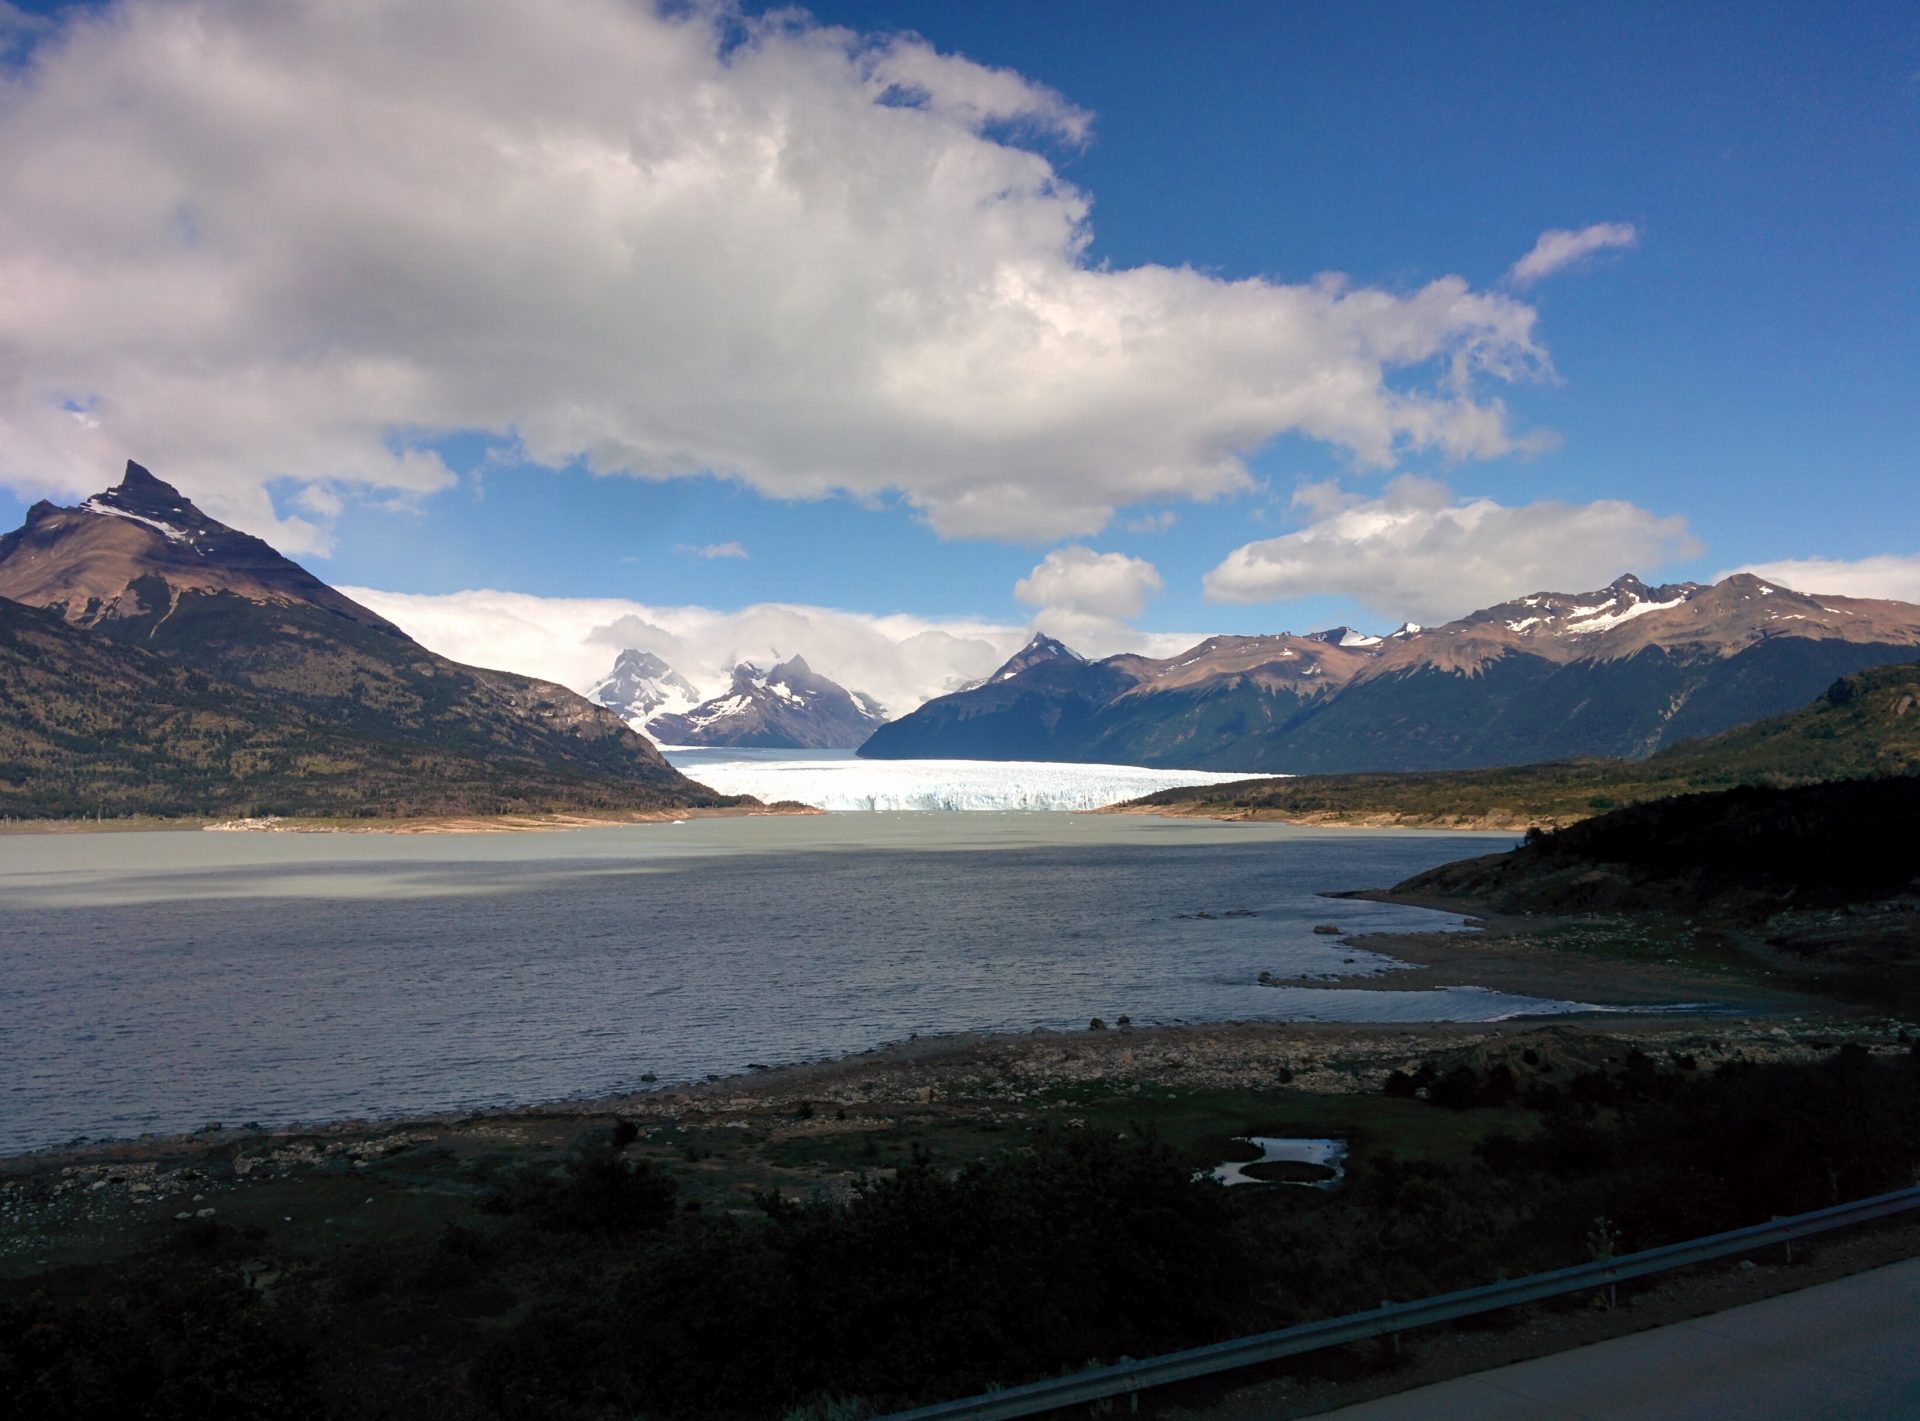 The Perito Moreno from many kilometers